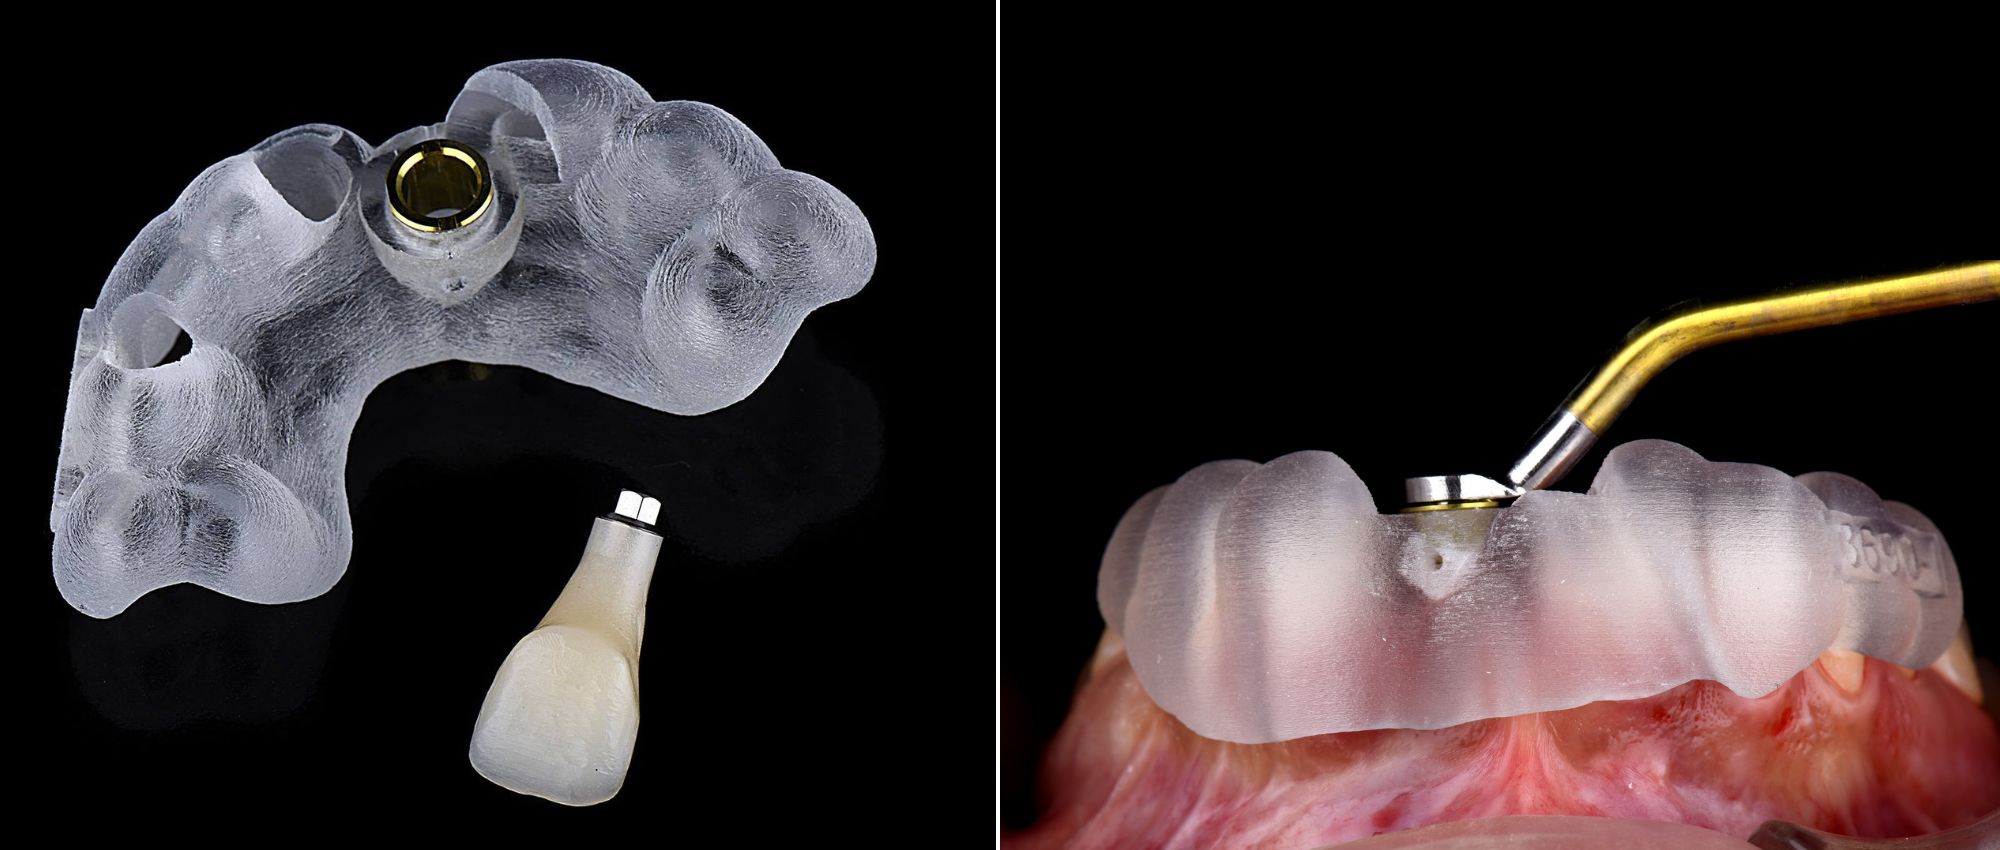 cirugía de implantes dentales con guiada